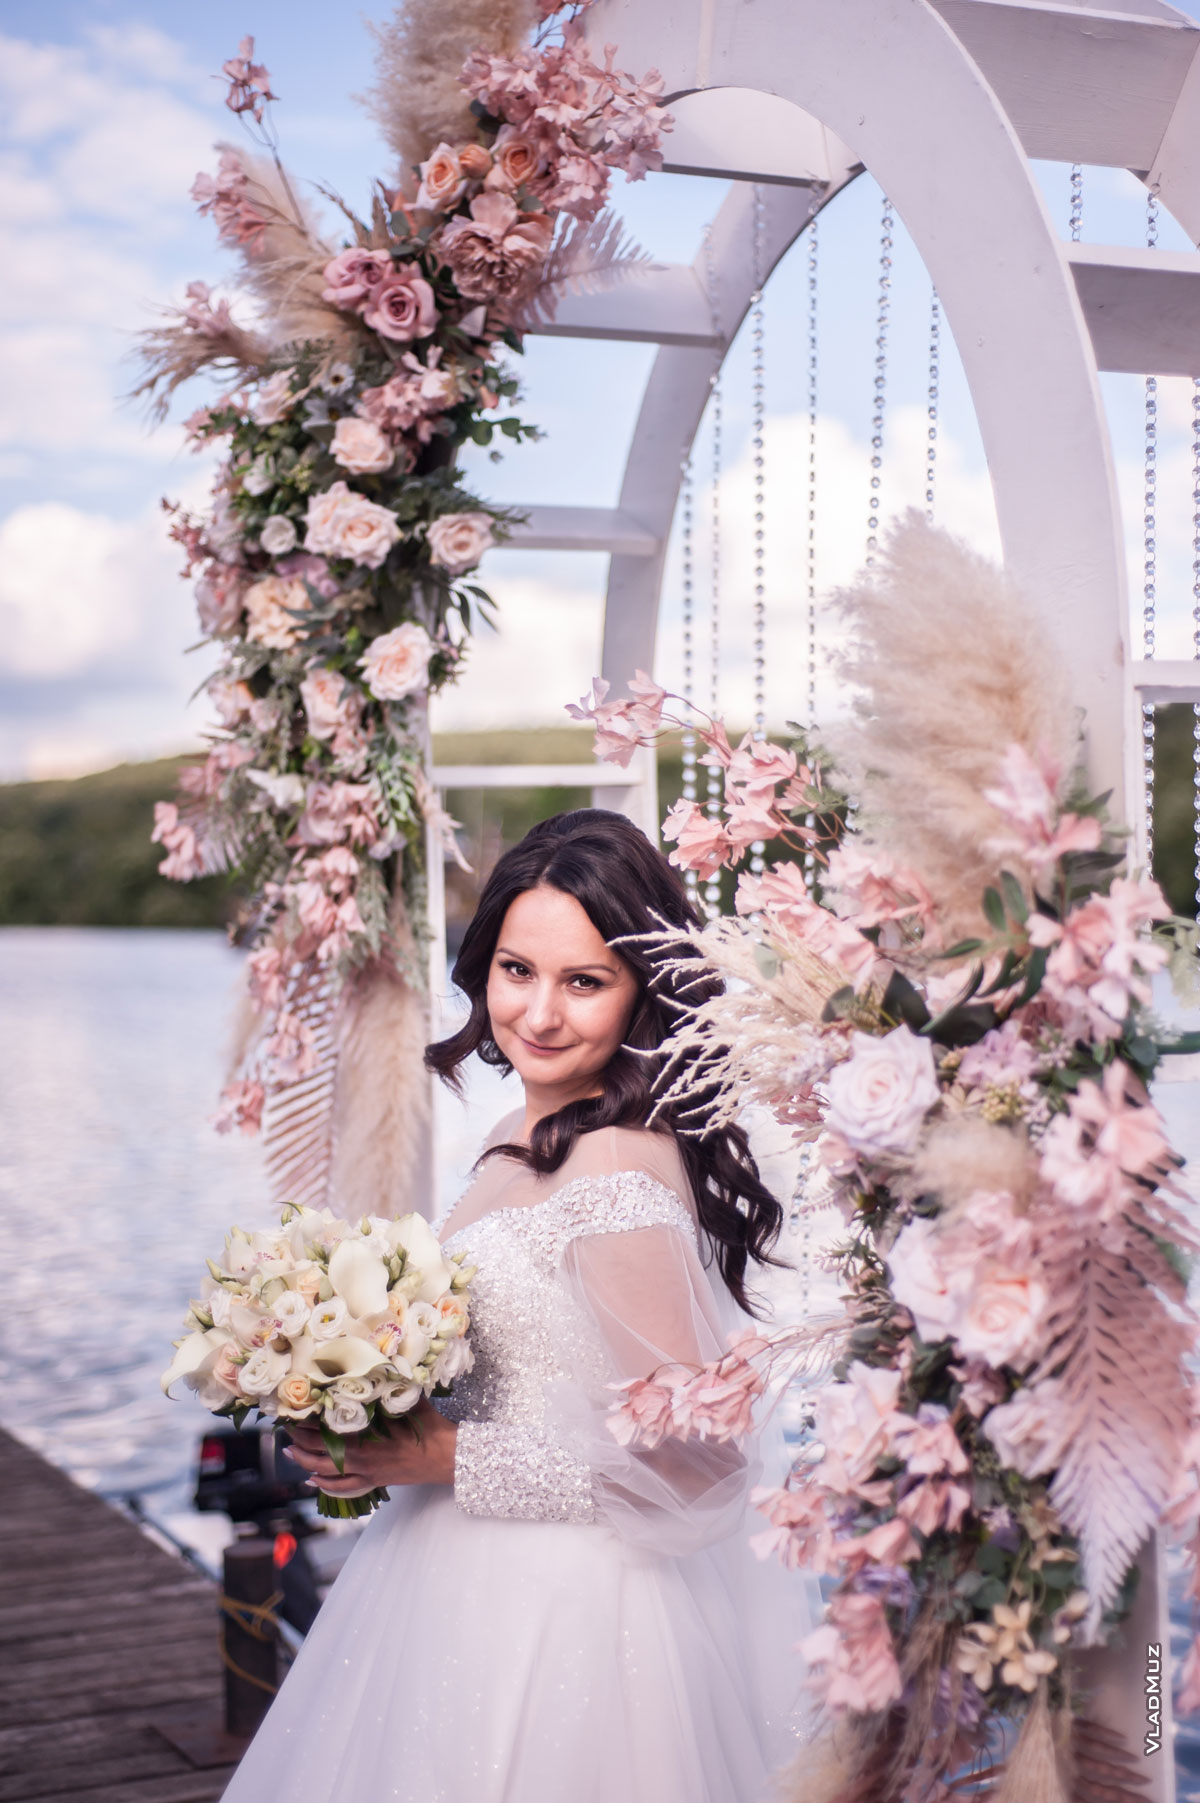 Фото красивой невесты с букетом на фоне свадебной арки